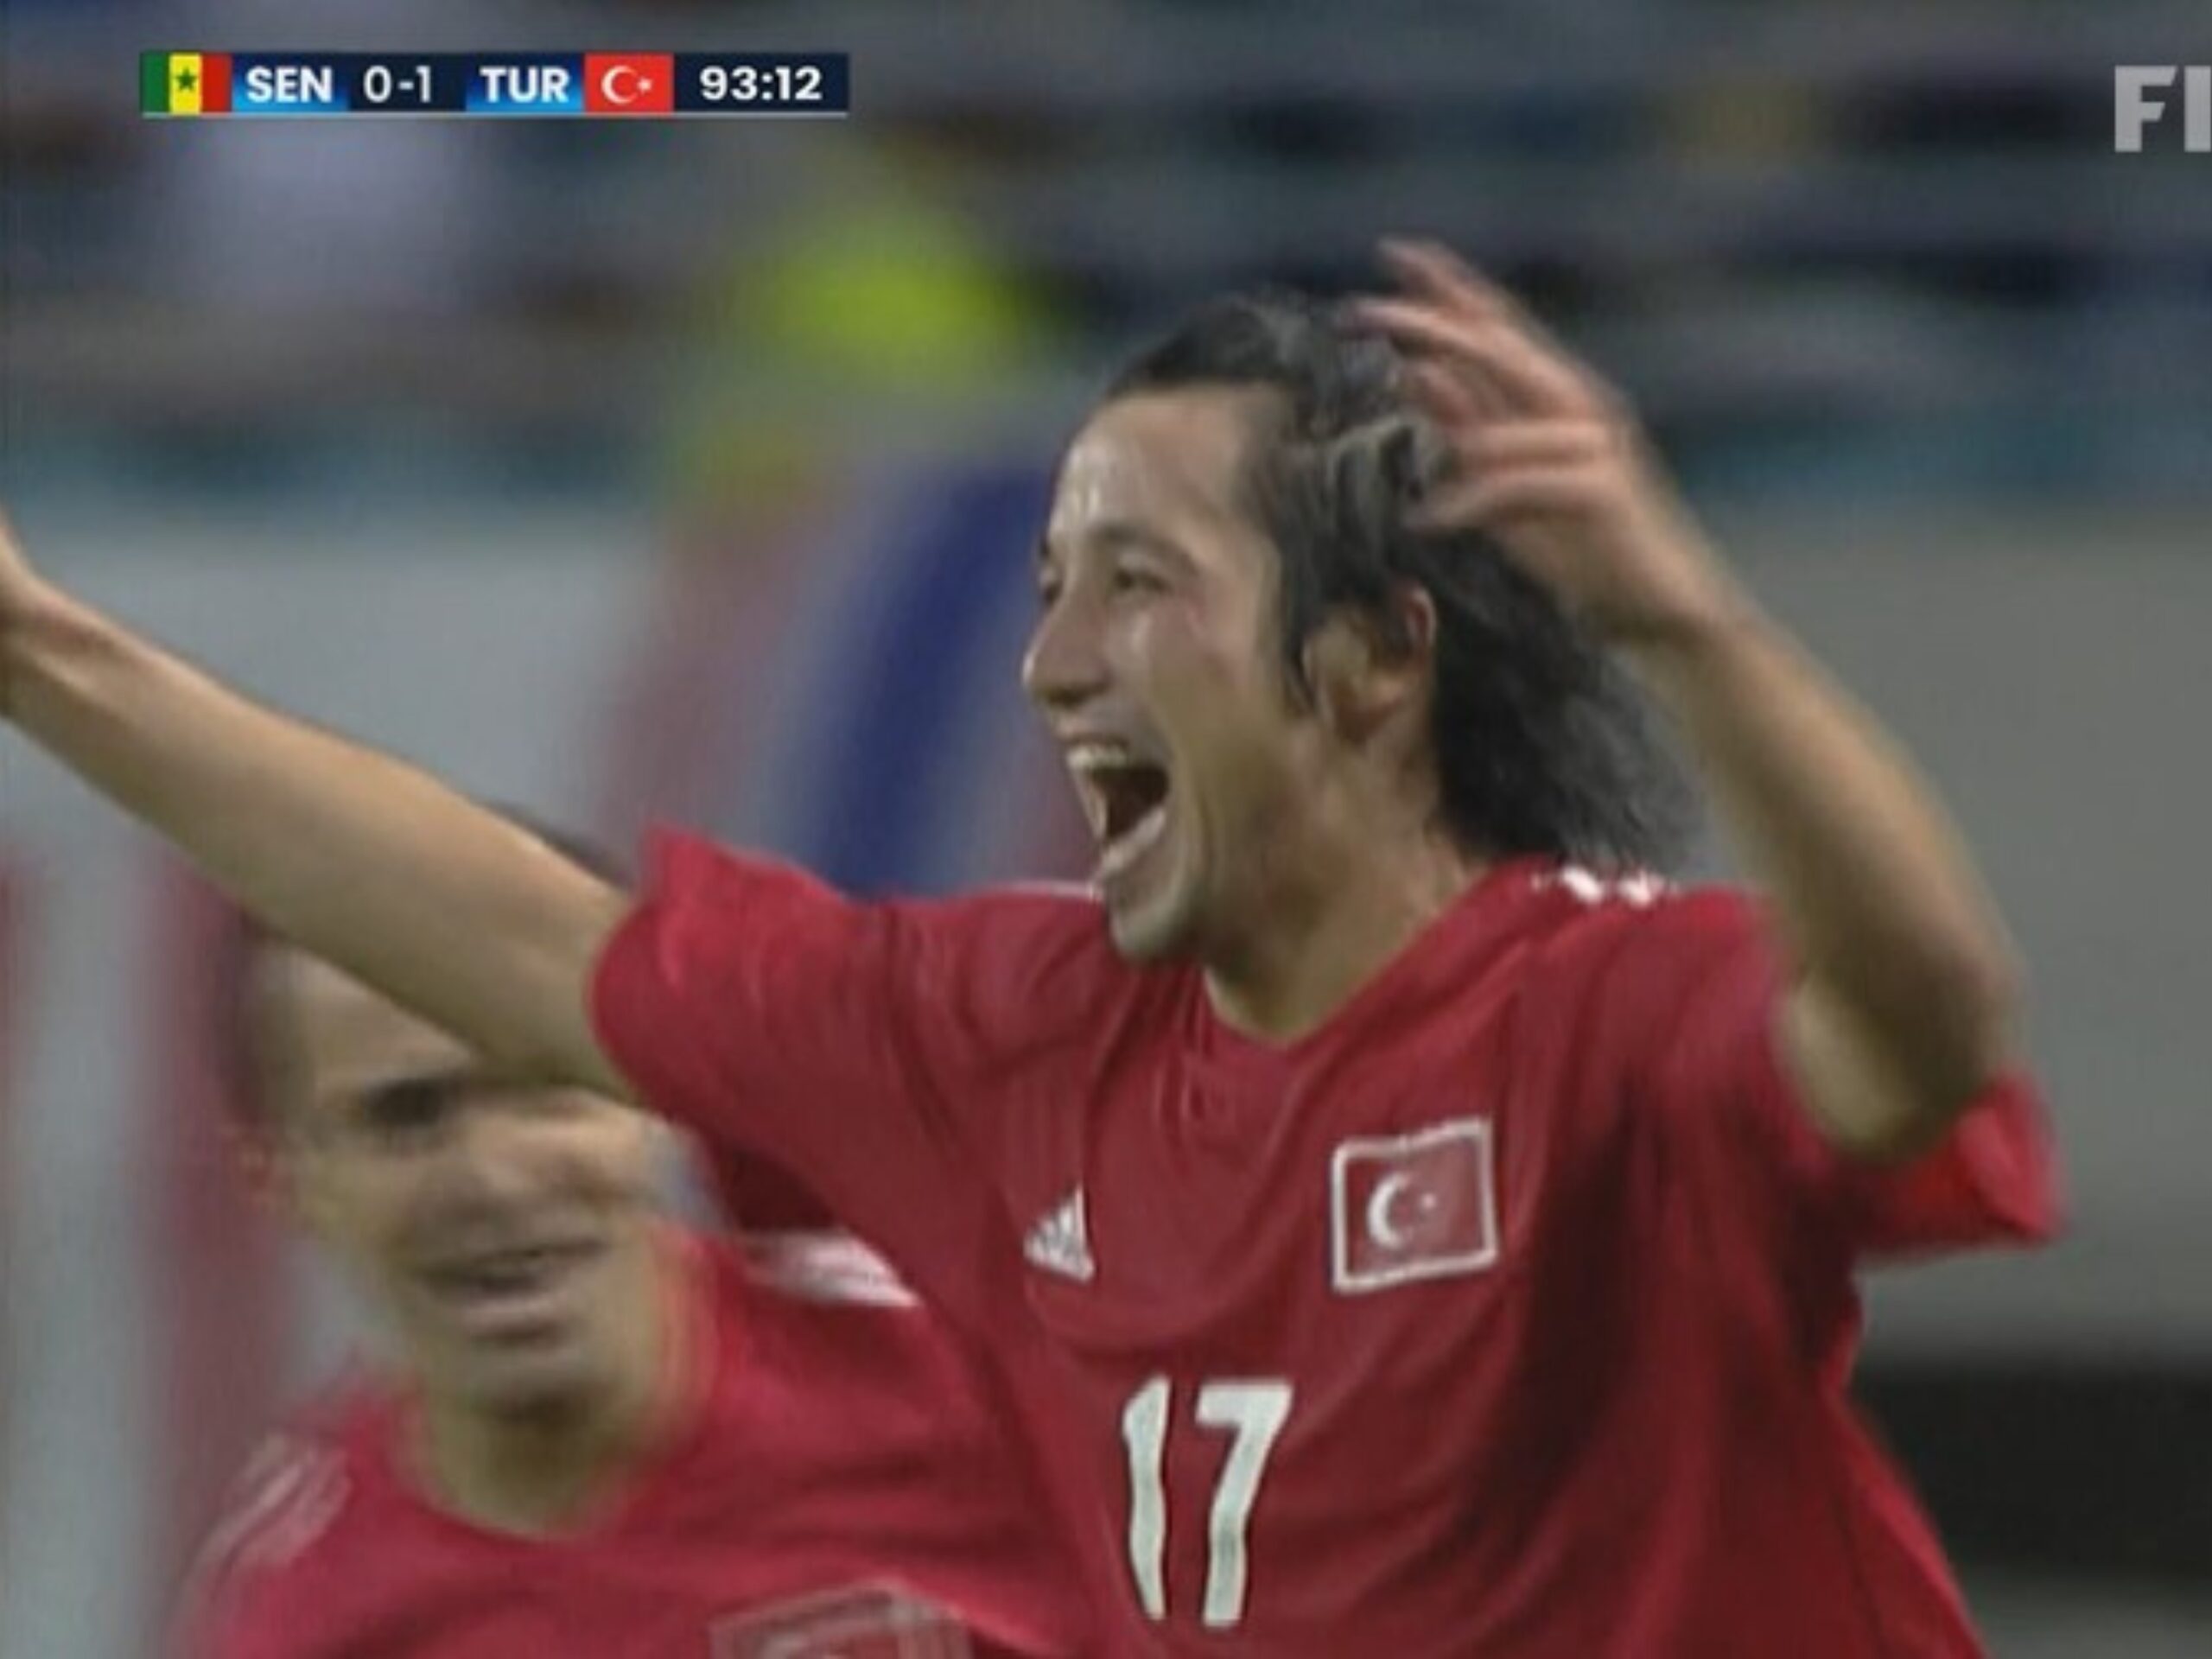 İlhan Mansız fez o gol que garantiu a Turquia nas semifinais da Copa do Mundo de 2022